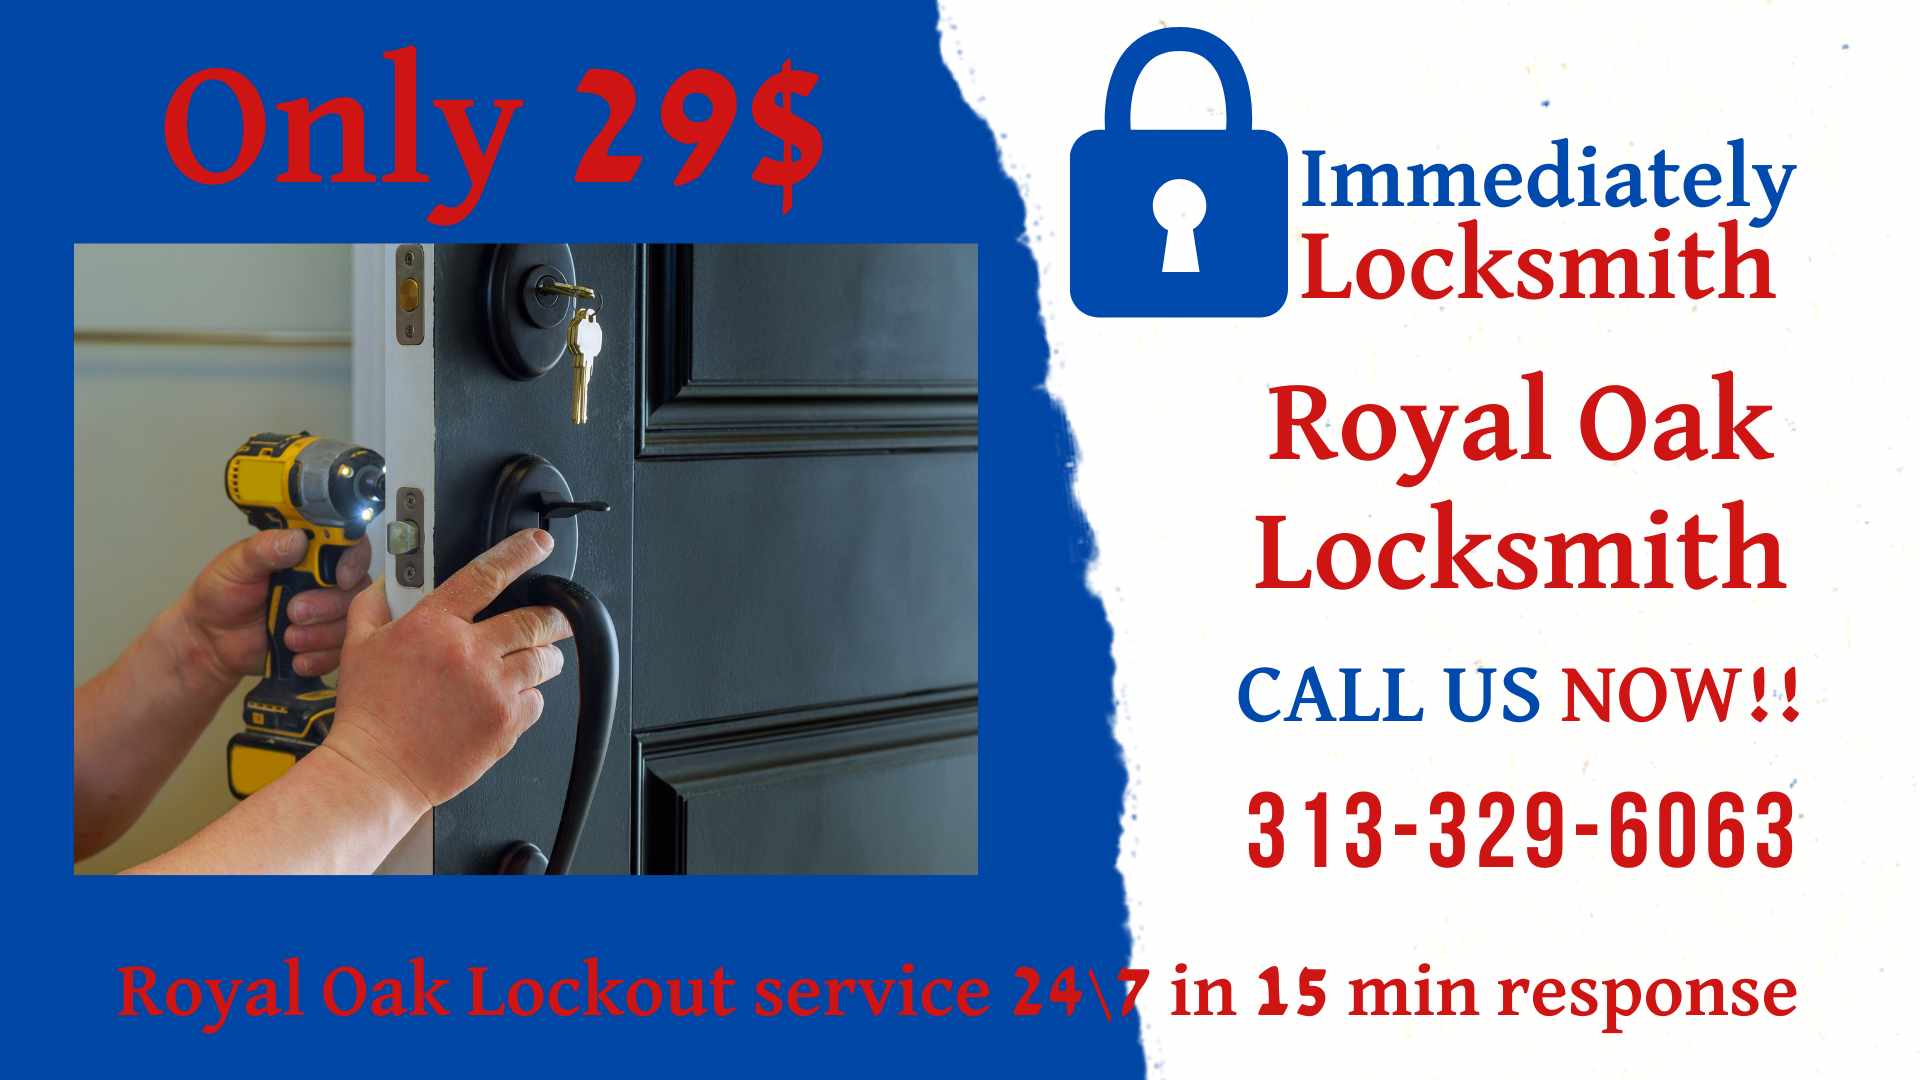 Royal Oak Locksmith Lockout service